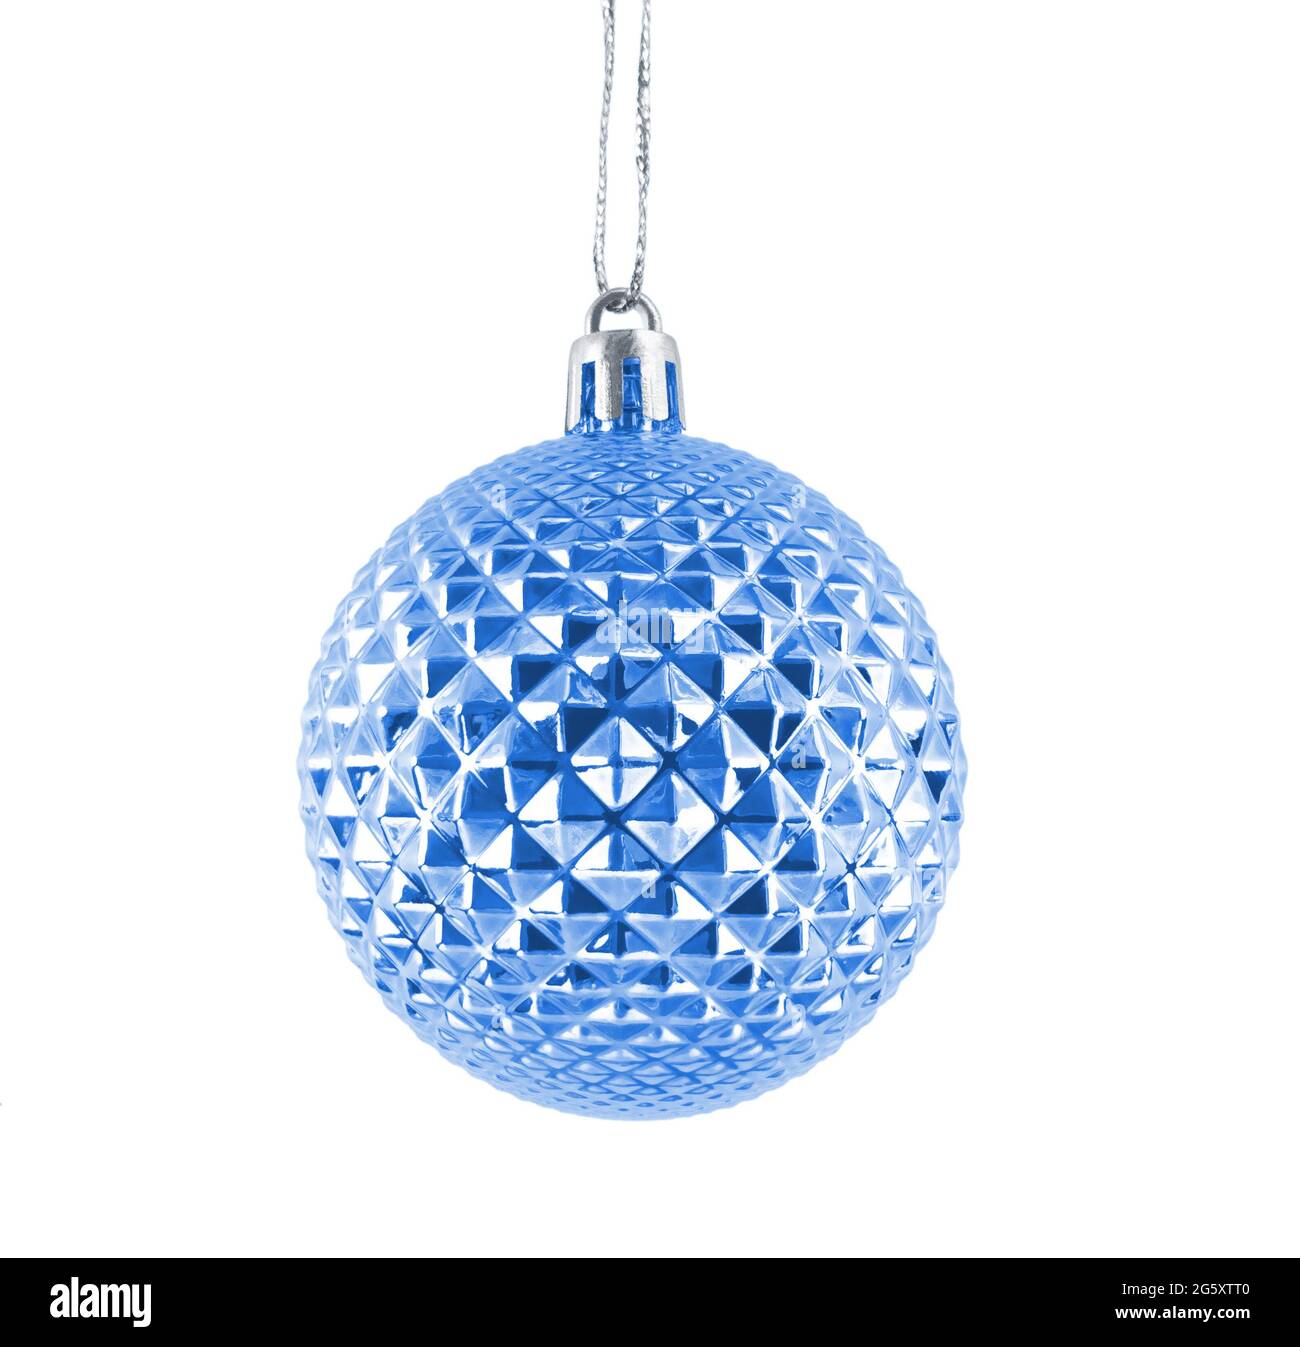 Hanging navy blue shiny Christmas bauble isolated on white background. Stock Photo